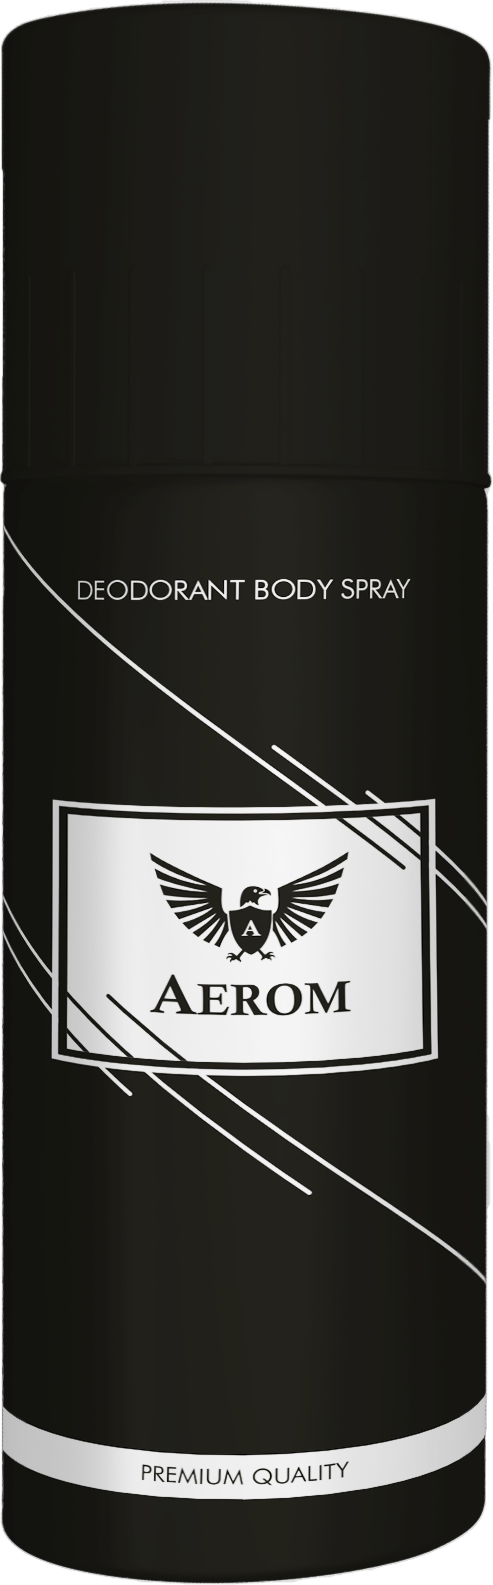 deodorant designing in india